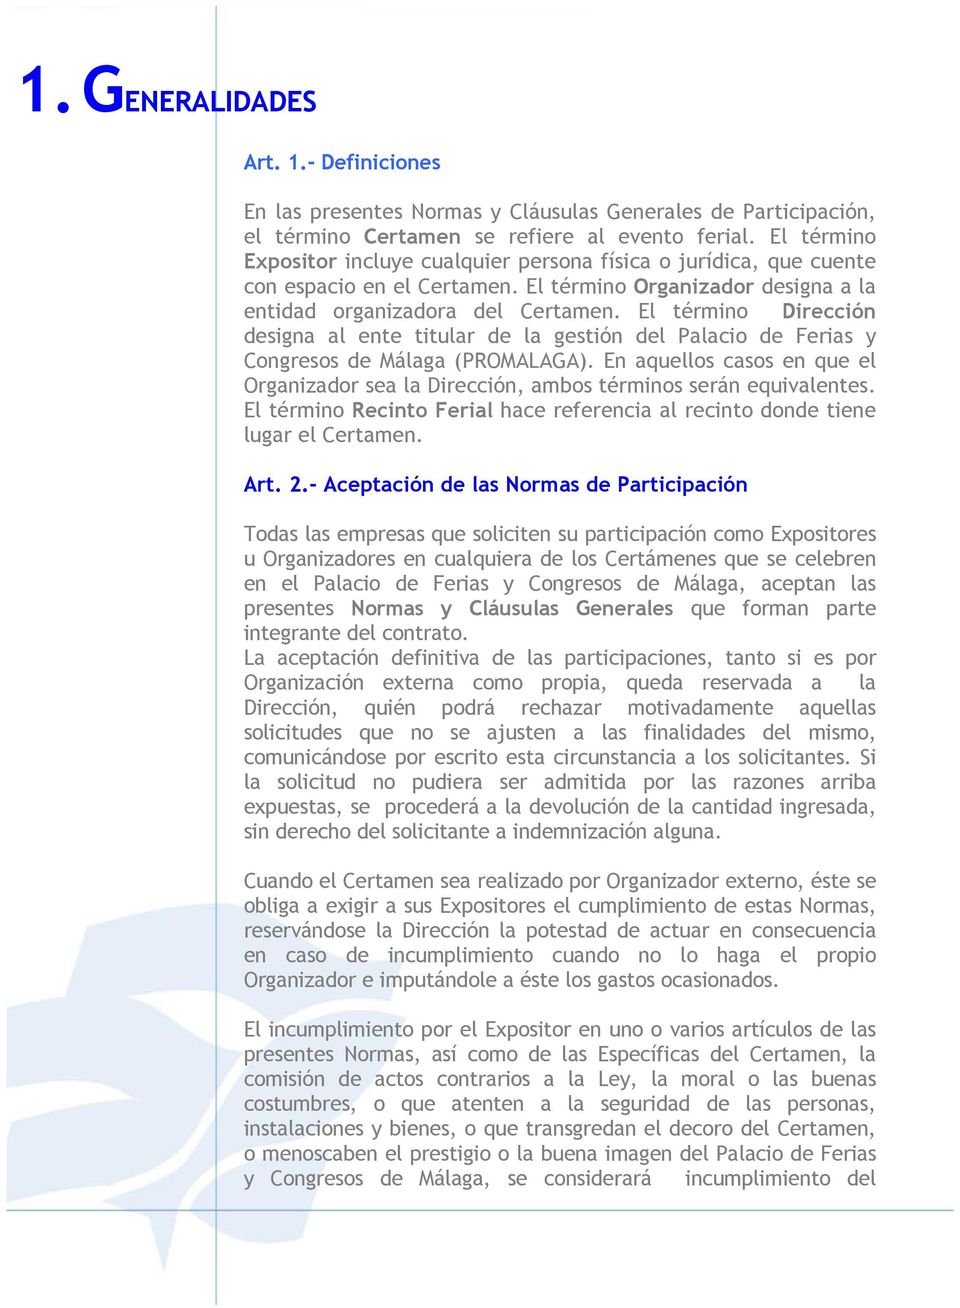 El término Dirección designa al ente titular de la gestión del Palacio de Ferias y Congresos de Málaga (PROMALAGA).